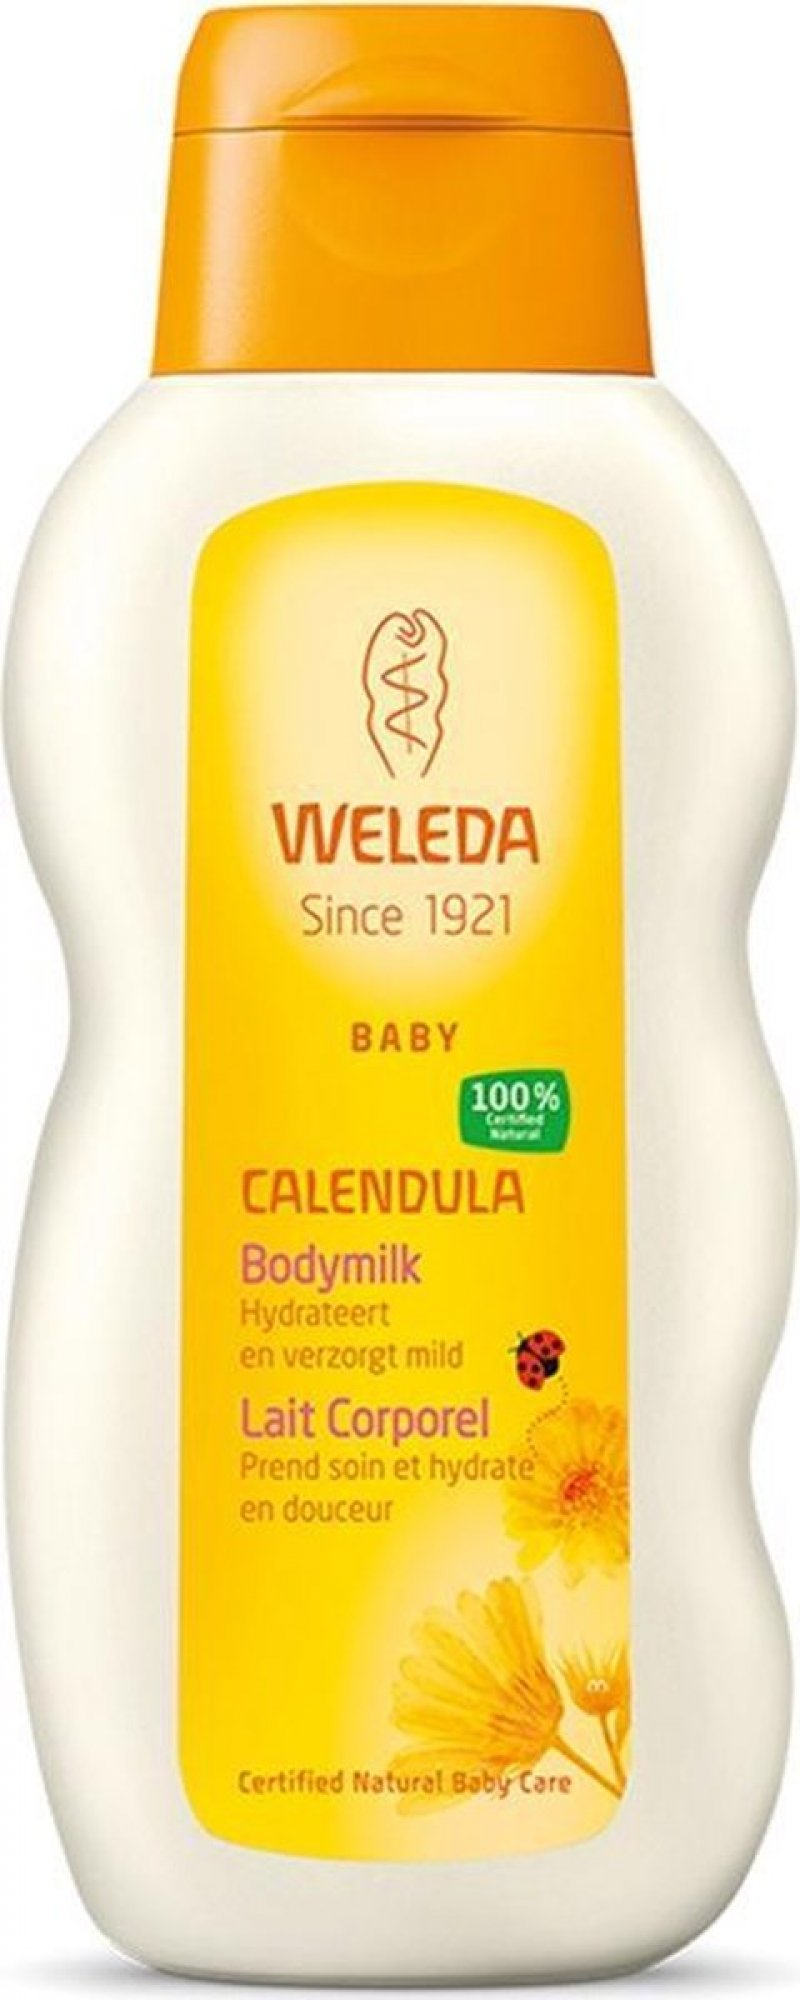 Calendula Baby Bodymilk - 200 ml